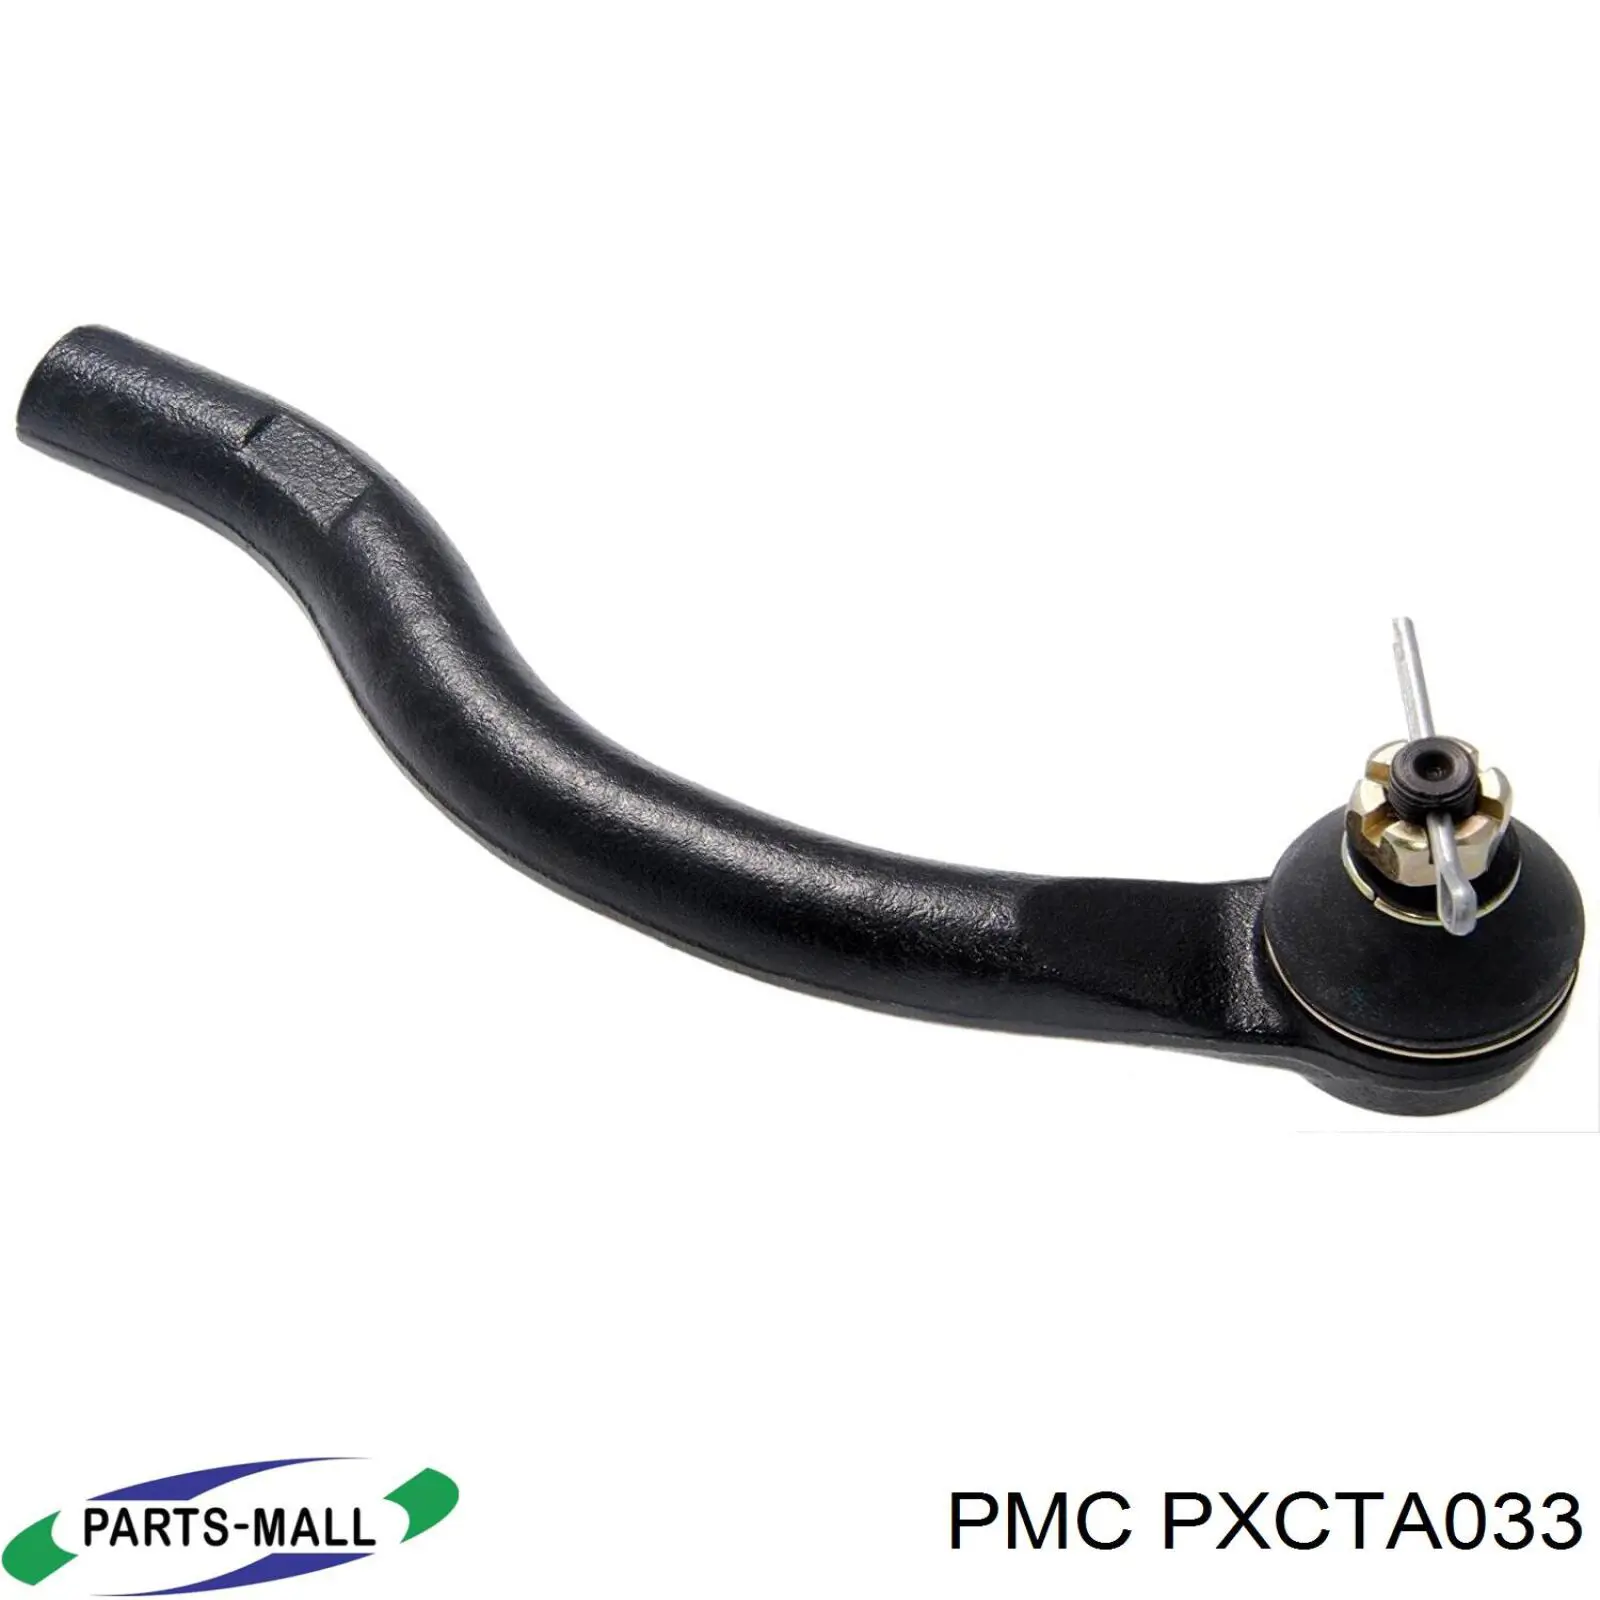 PXCTA-033 Parts-Mall rótula barra de acoplamiento exterior